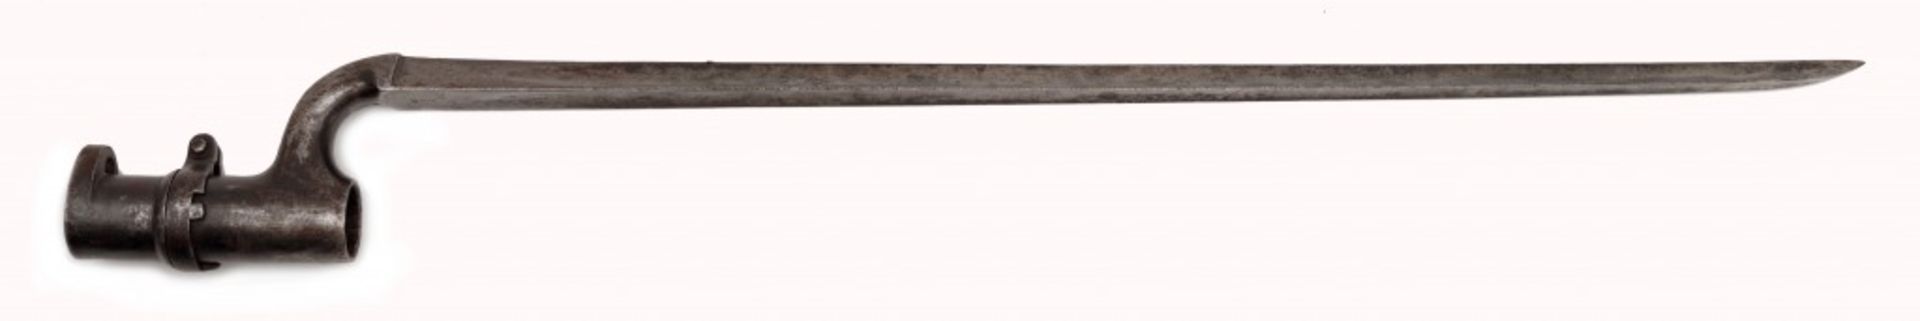 Bajonett für den Enfield-Gewehr Modell 1853